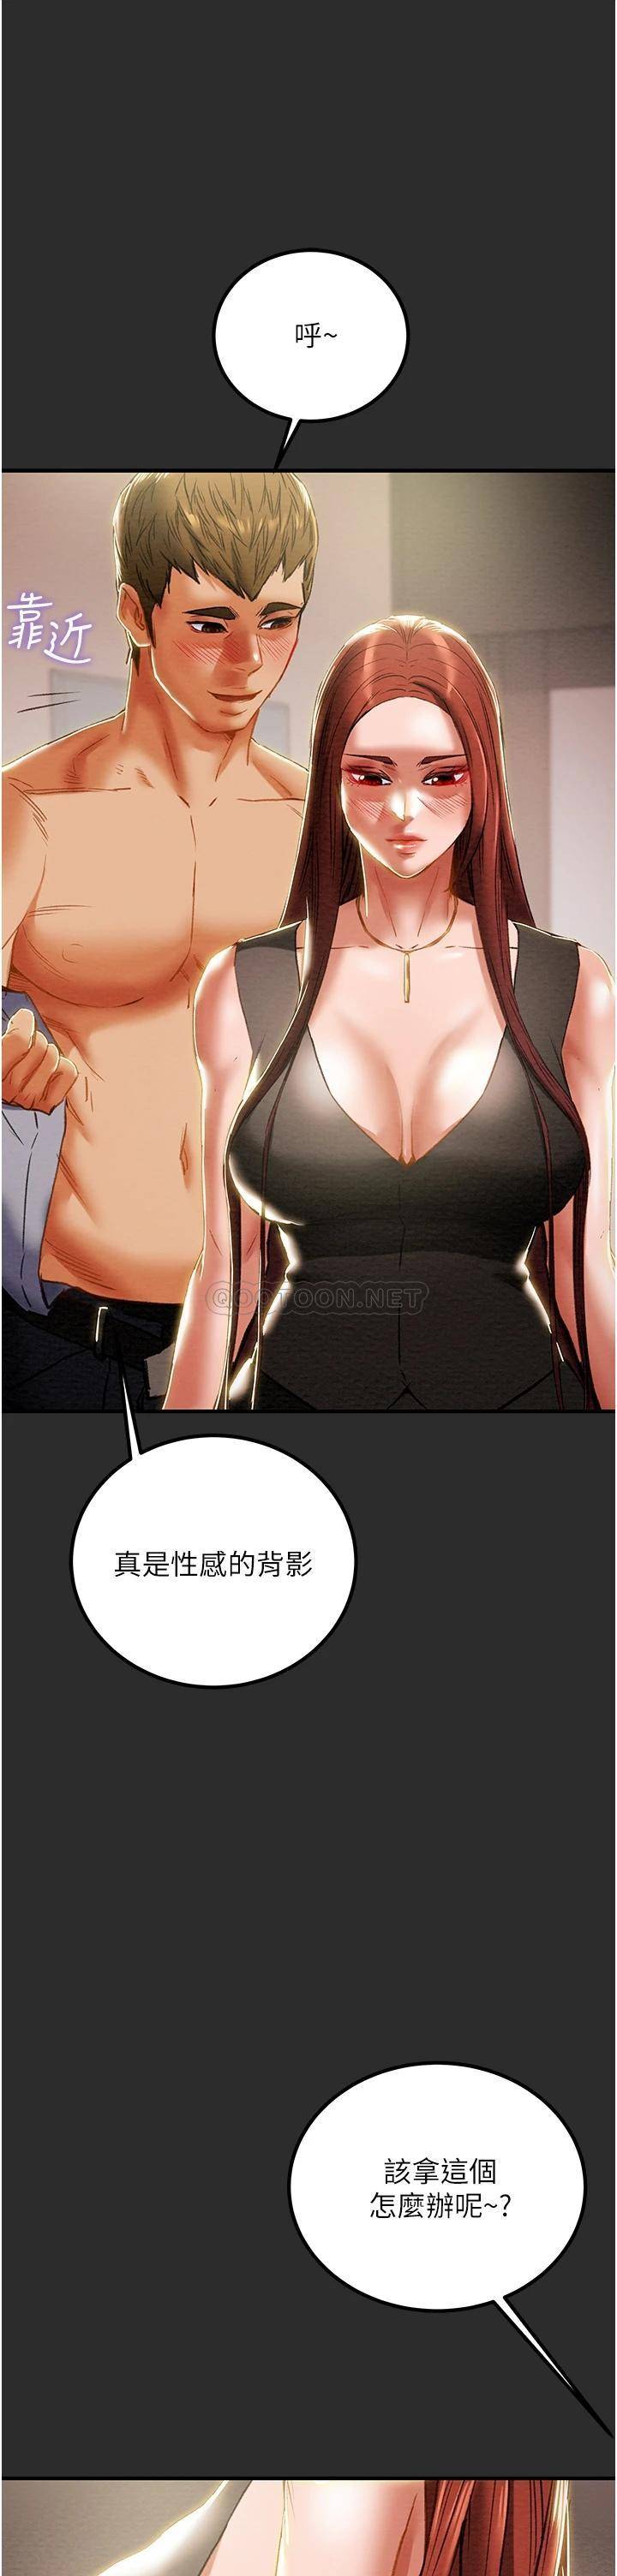 韩国污漫画 純情女攻略計劃 第66话人人贪求的性感胴体 21